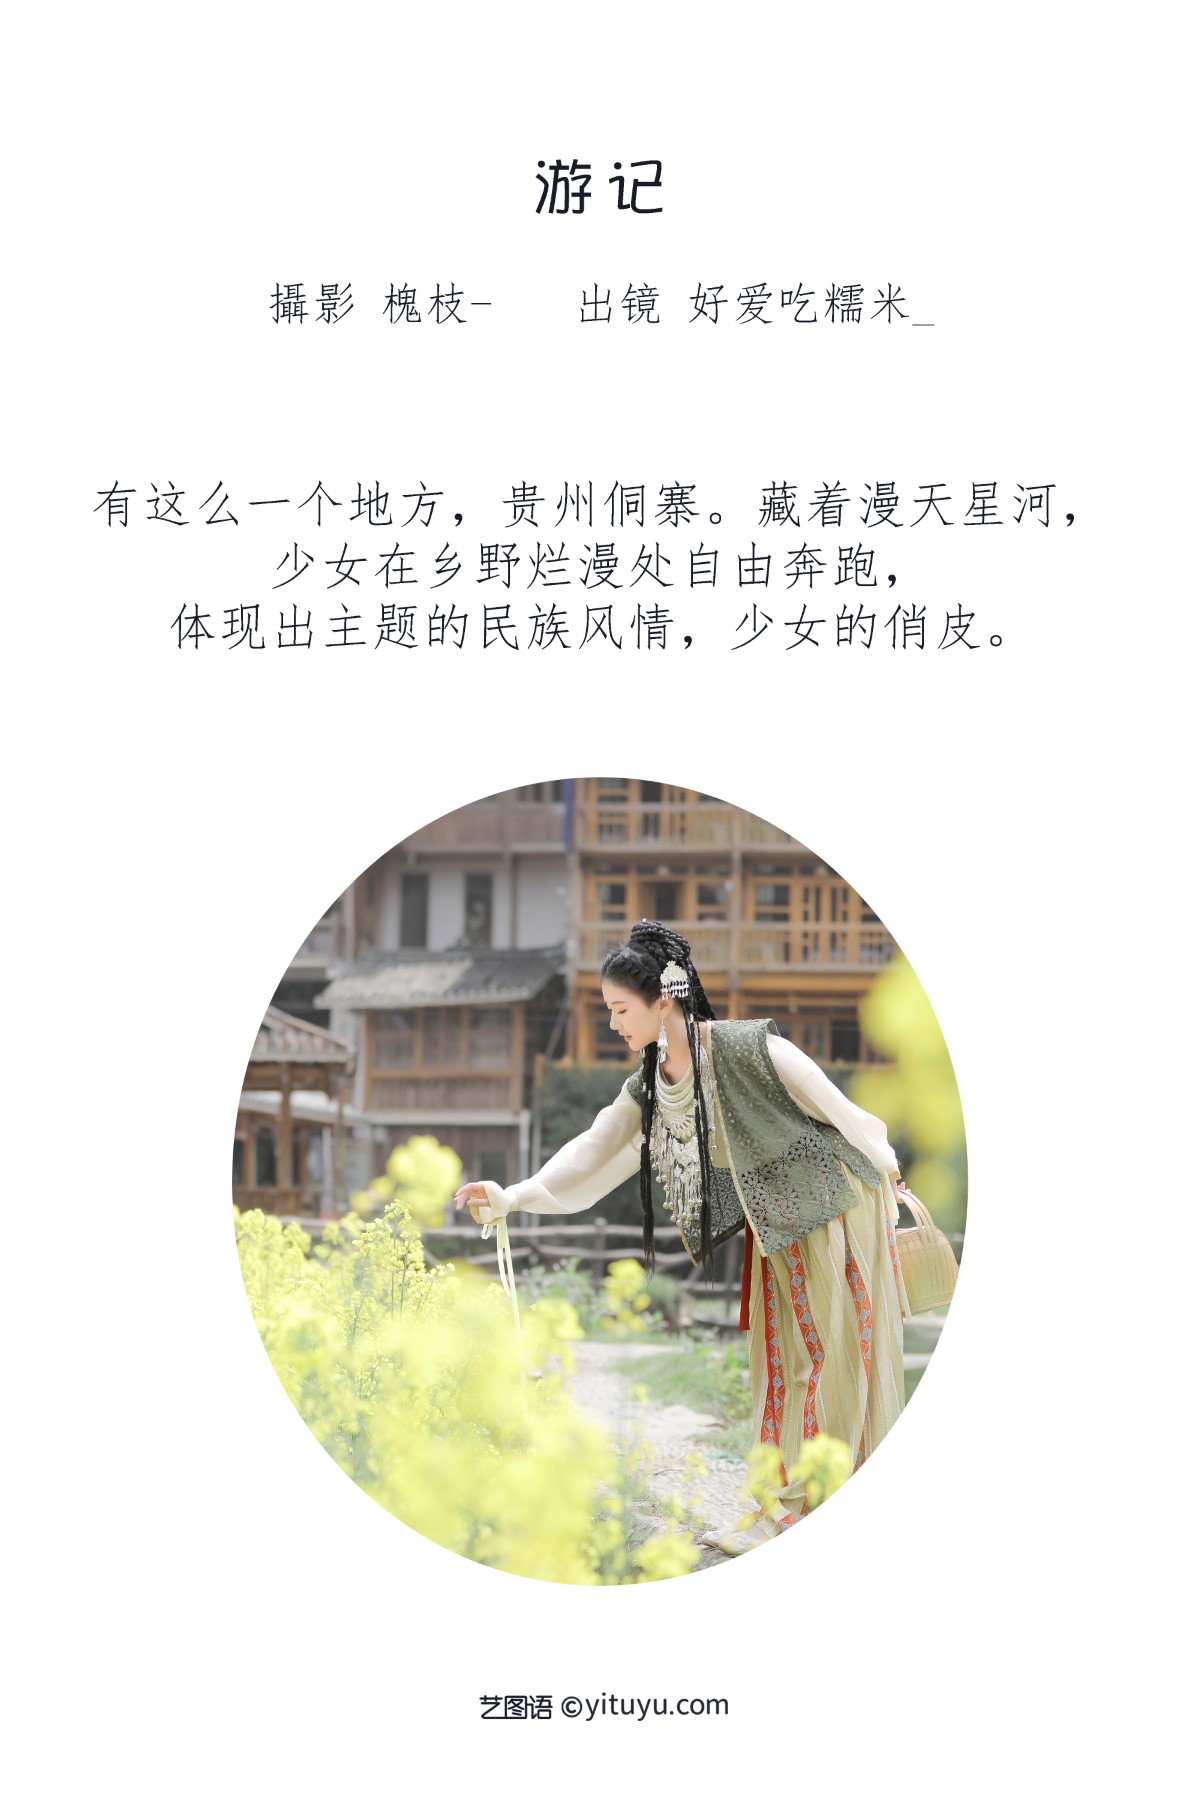 YiTuYu艺图语 Vol 1817 Suan La Tang Er 0001 2214927037.jpg